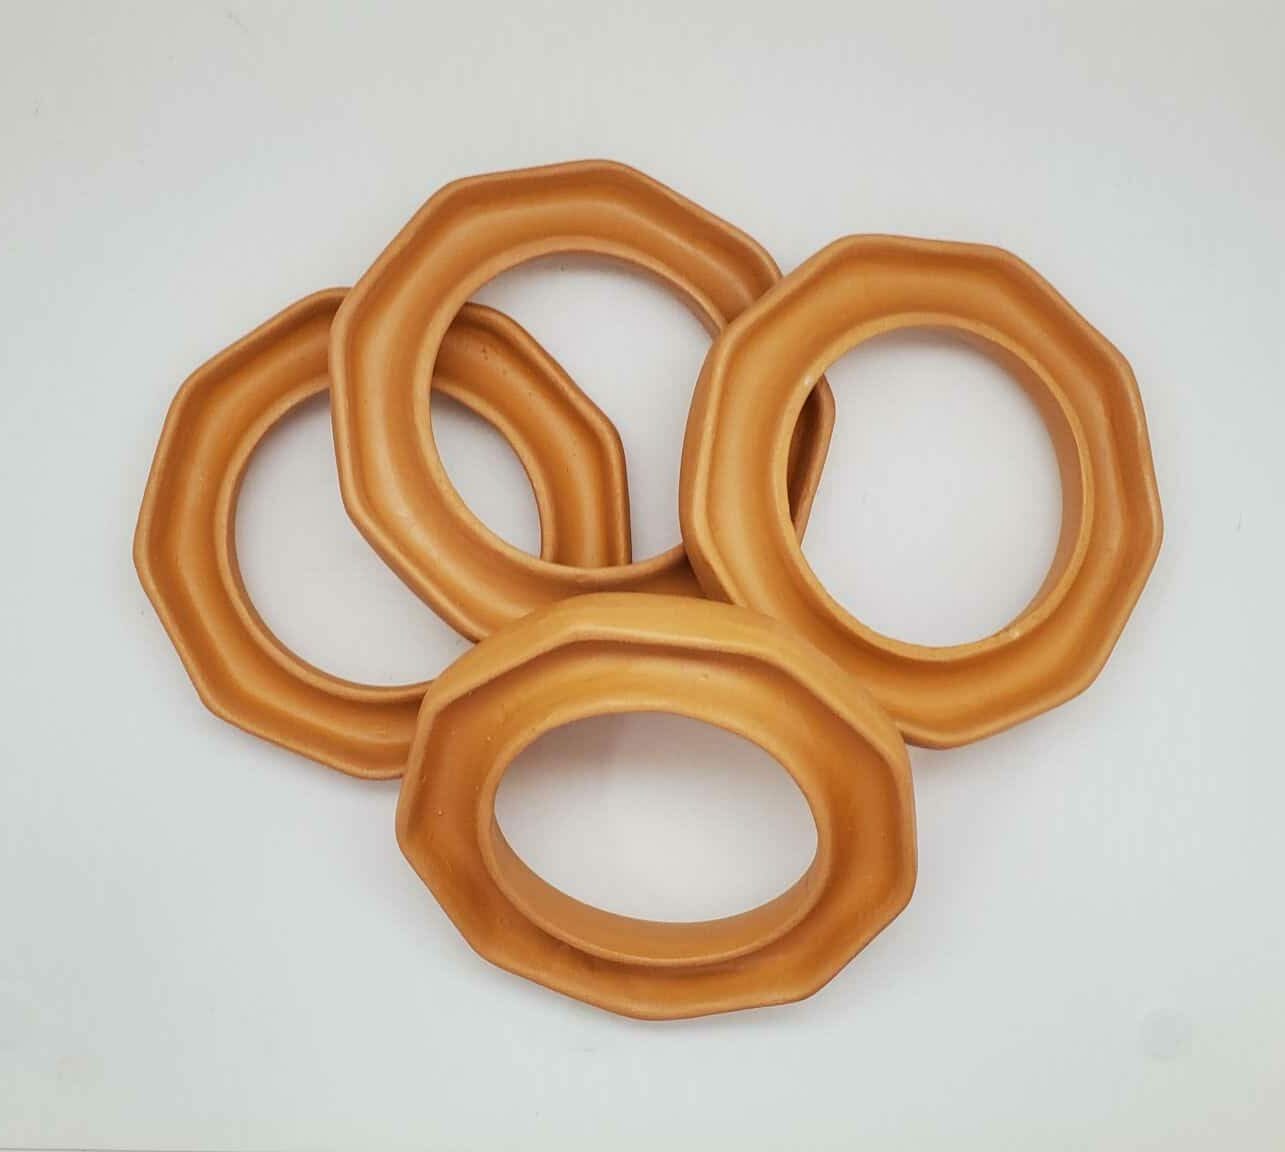 Light Bulb Rings Ceramic Diffuser Ring - Terra Cotta - Soyworx